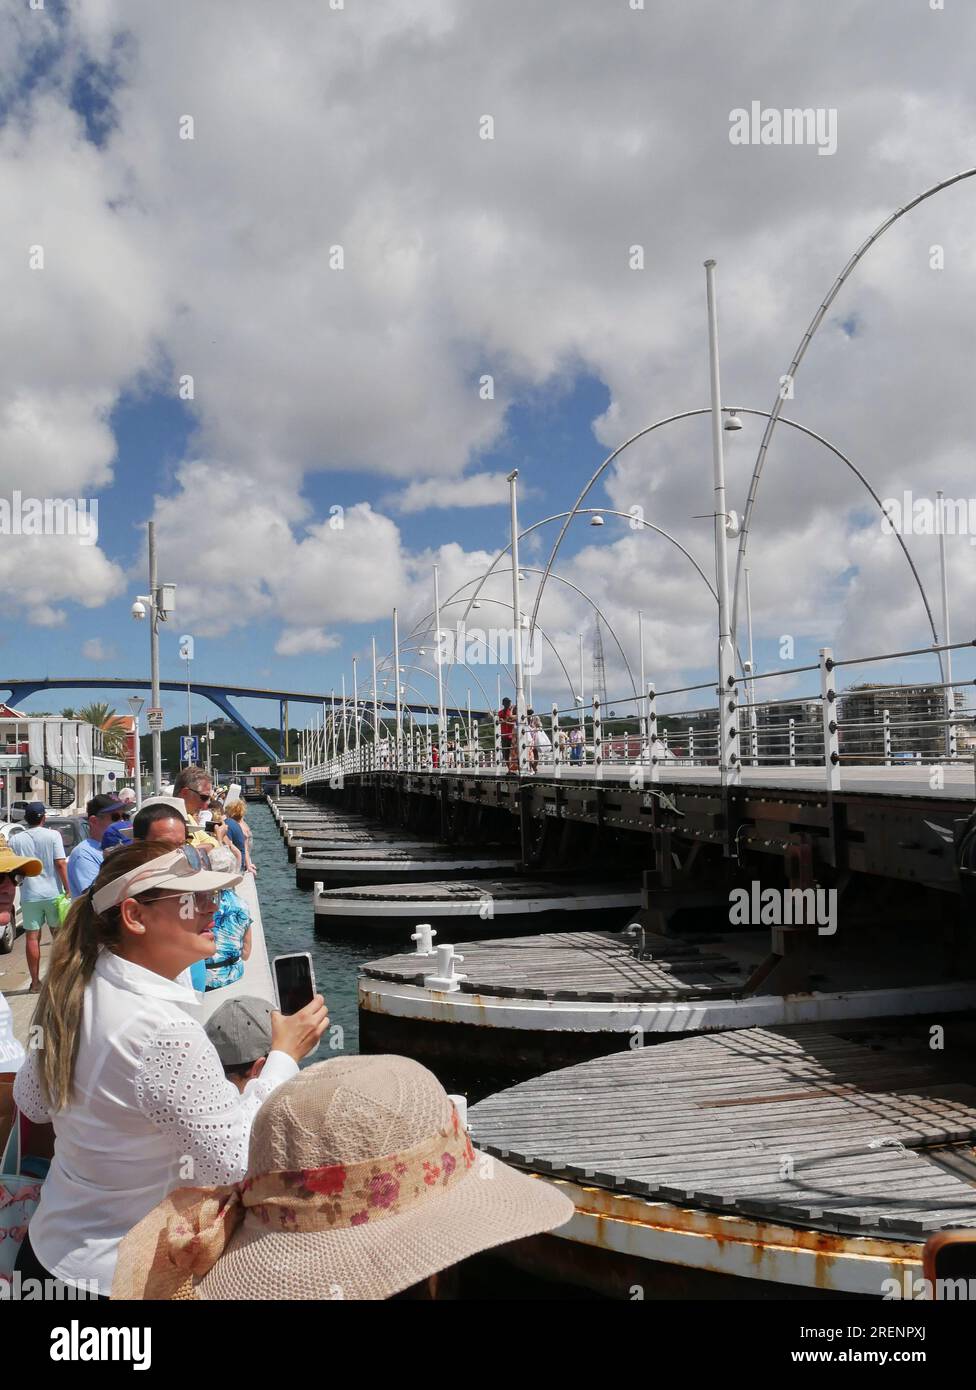 Il ponte pontone della Regina Emma a Willemstad è completamente aperto e mostra i pontoni galleggianti con i turisti che guardano. Il ponte fu costruito nel 1888. Foto Stock